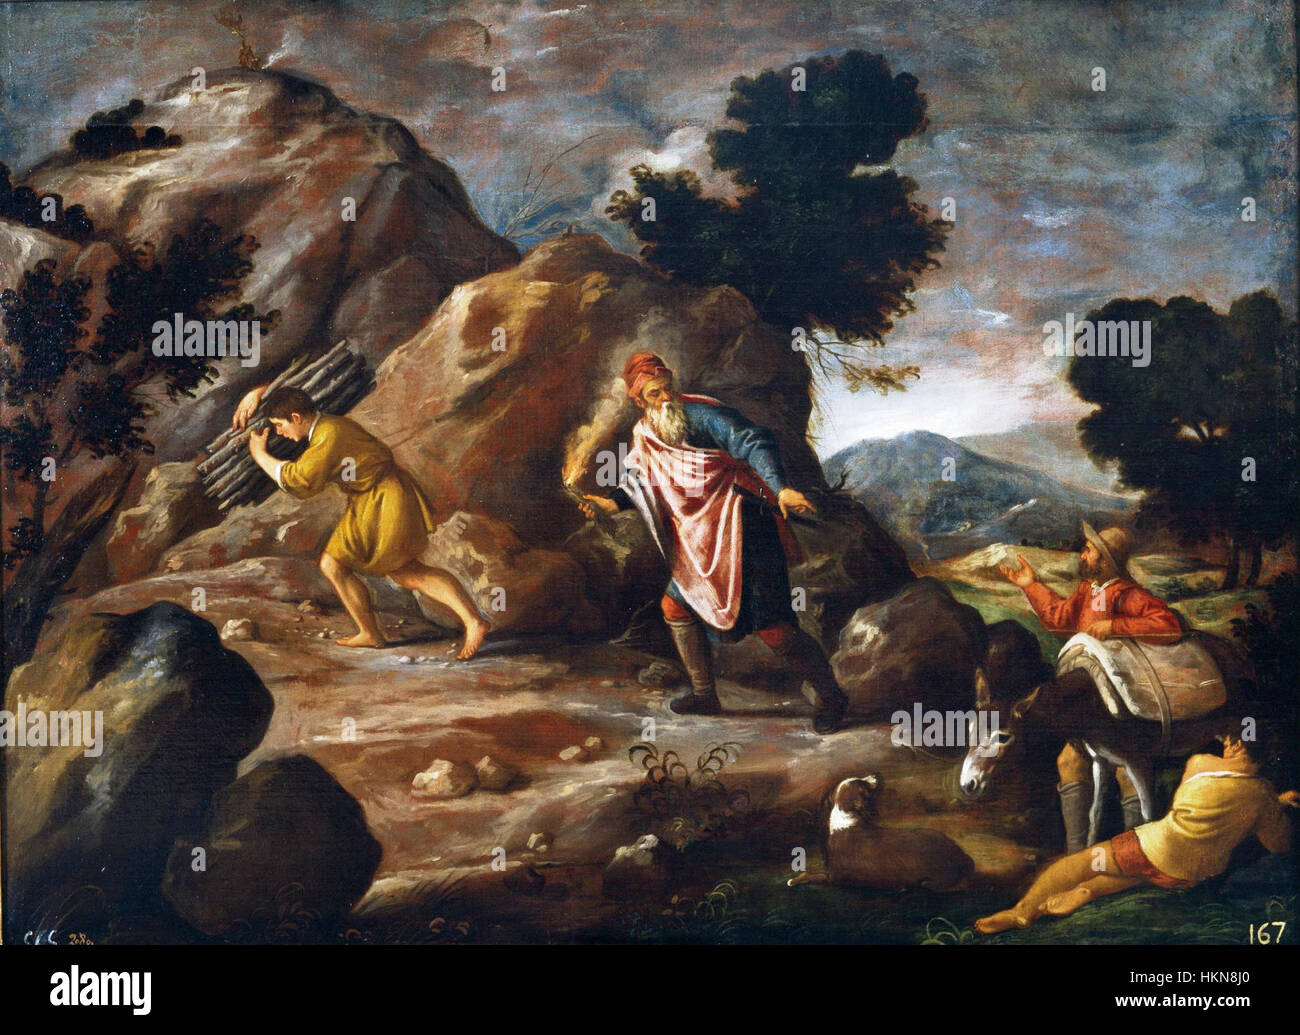 Abraham e Isaac camino del sacrificio, de Pedro de Orrente (Museo del Prado) Stock Photo